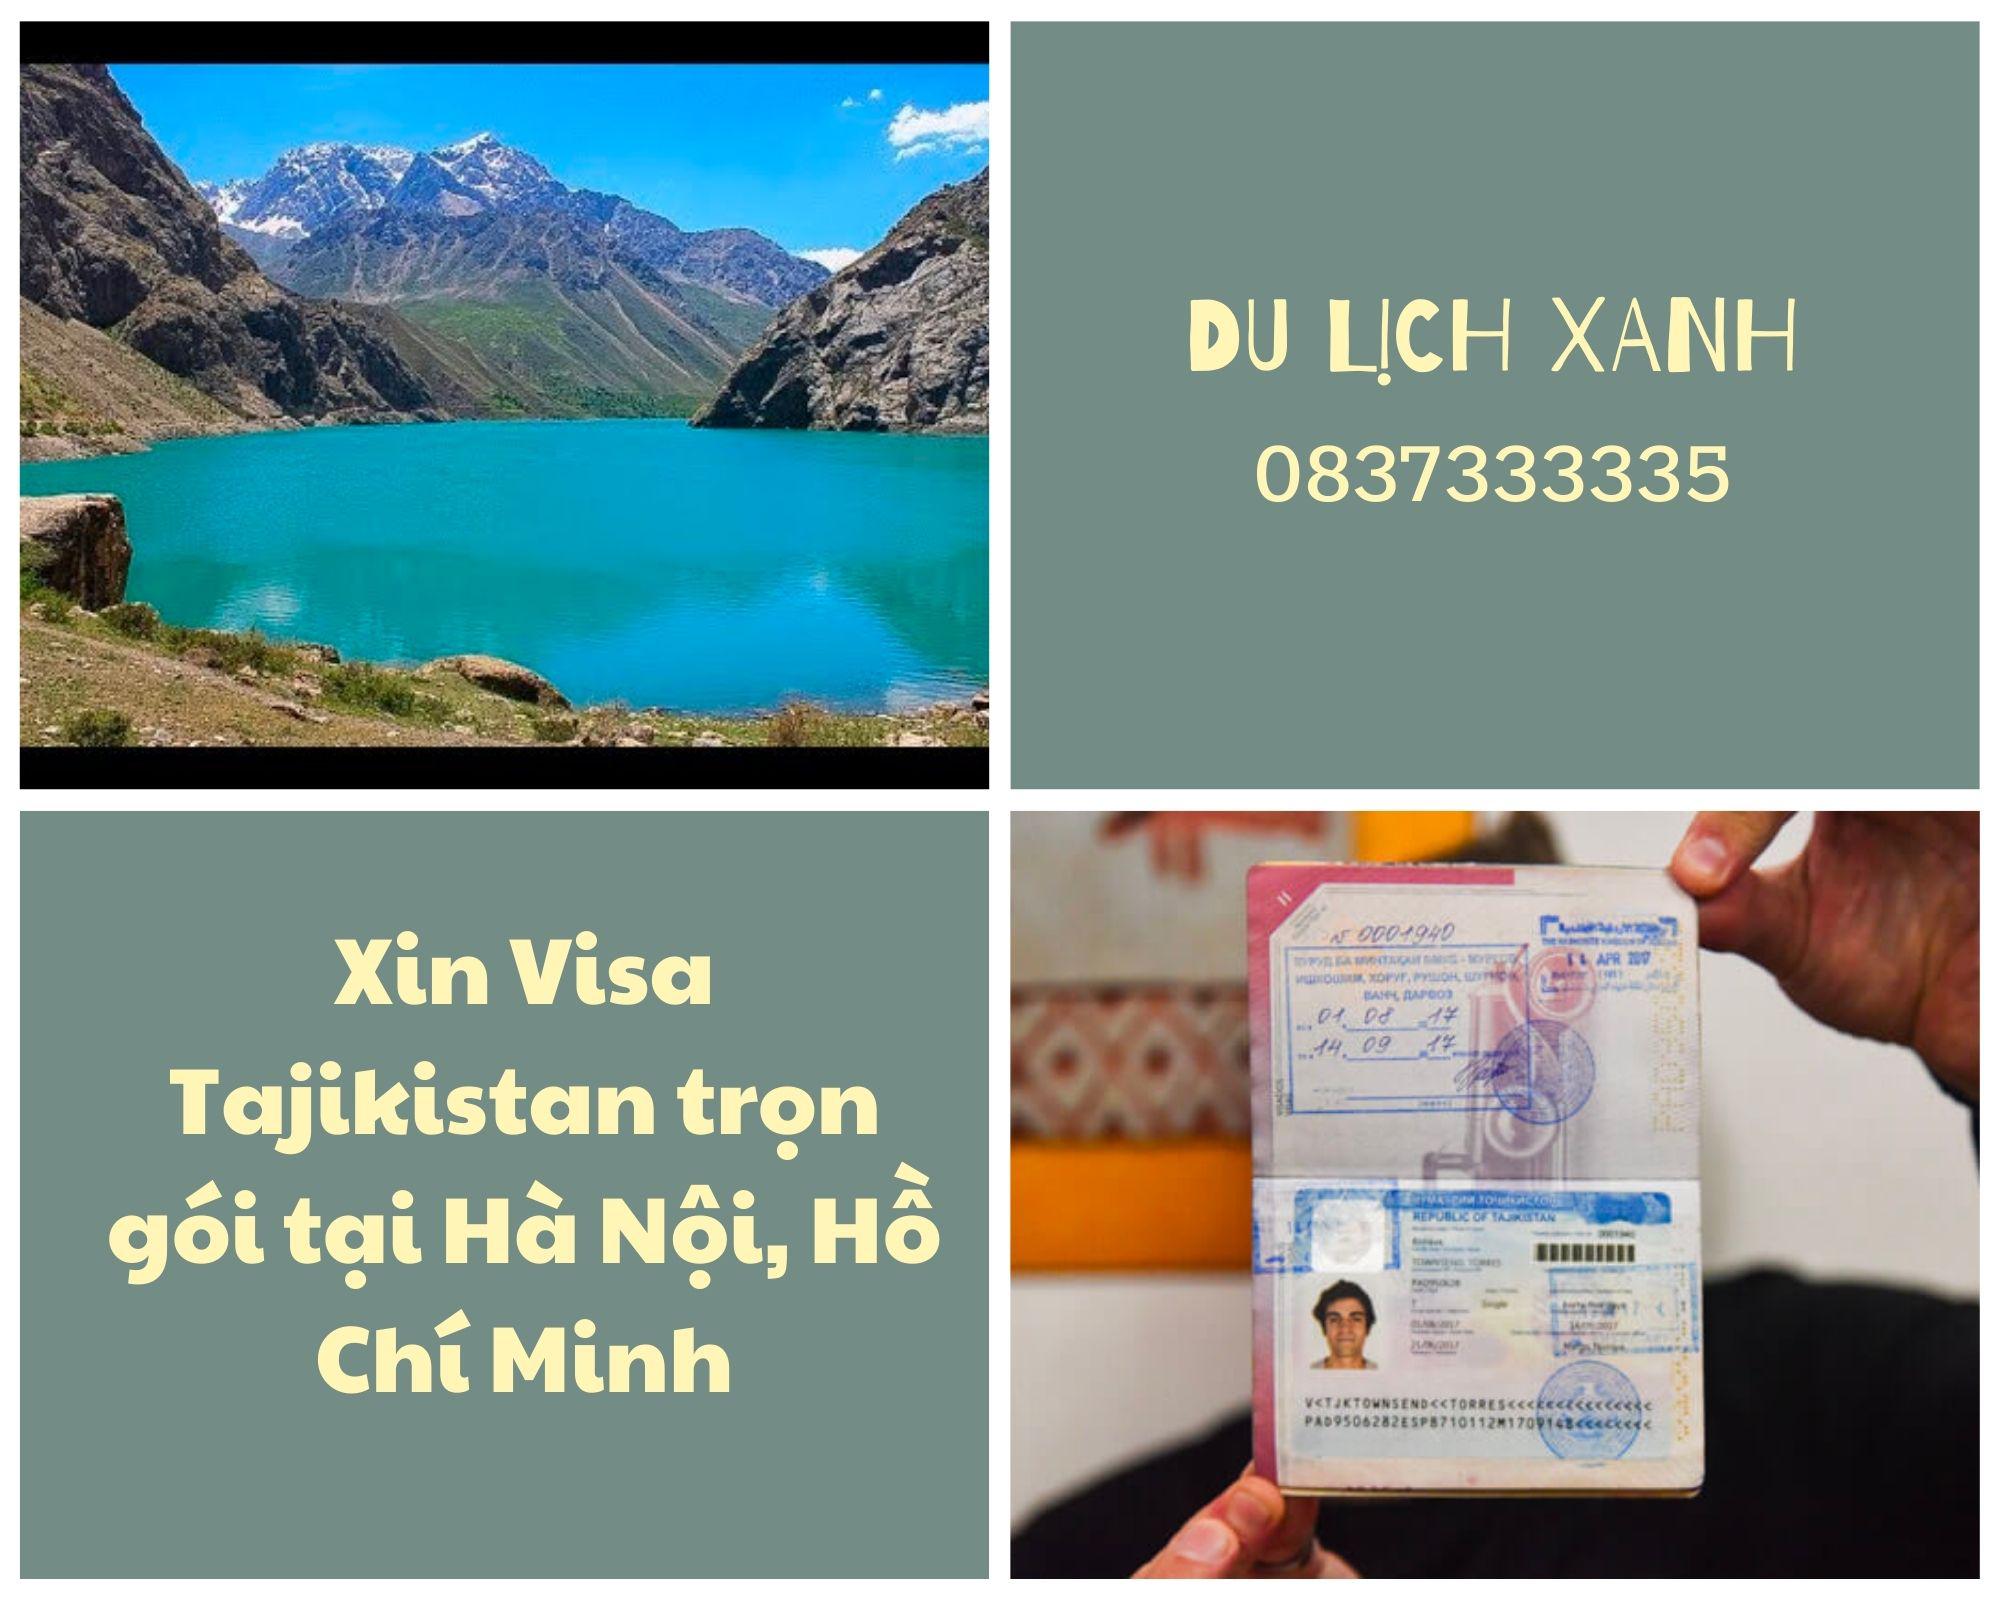 Xin Visa Tajikistan trọn gói tại Hà Nội, Hồ Chí Minh